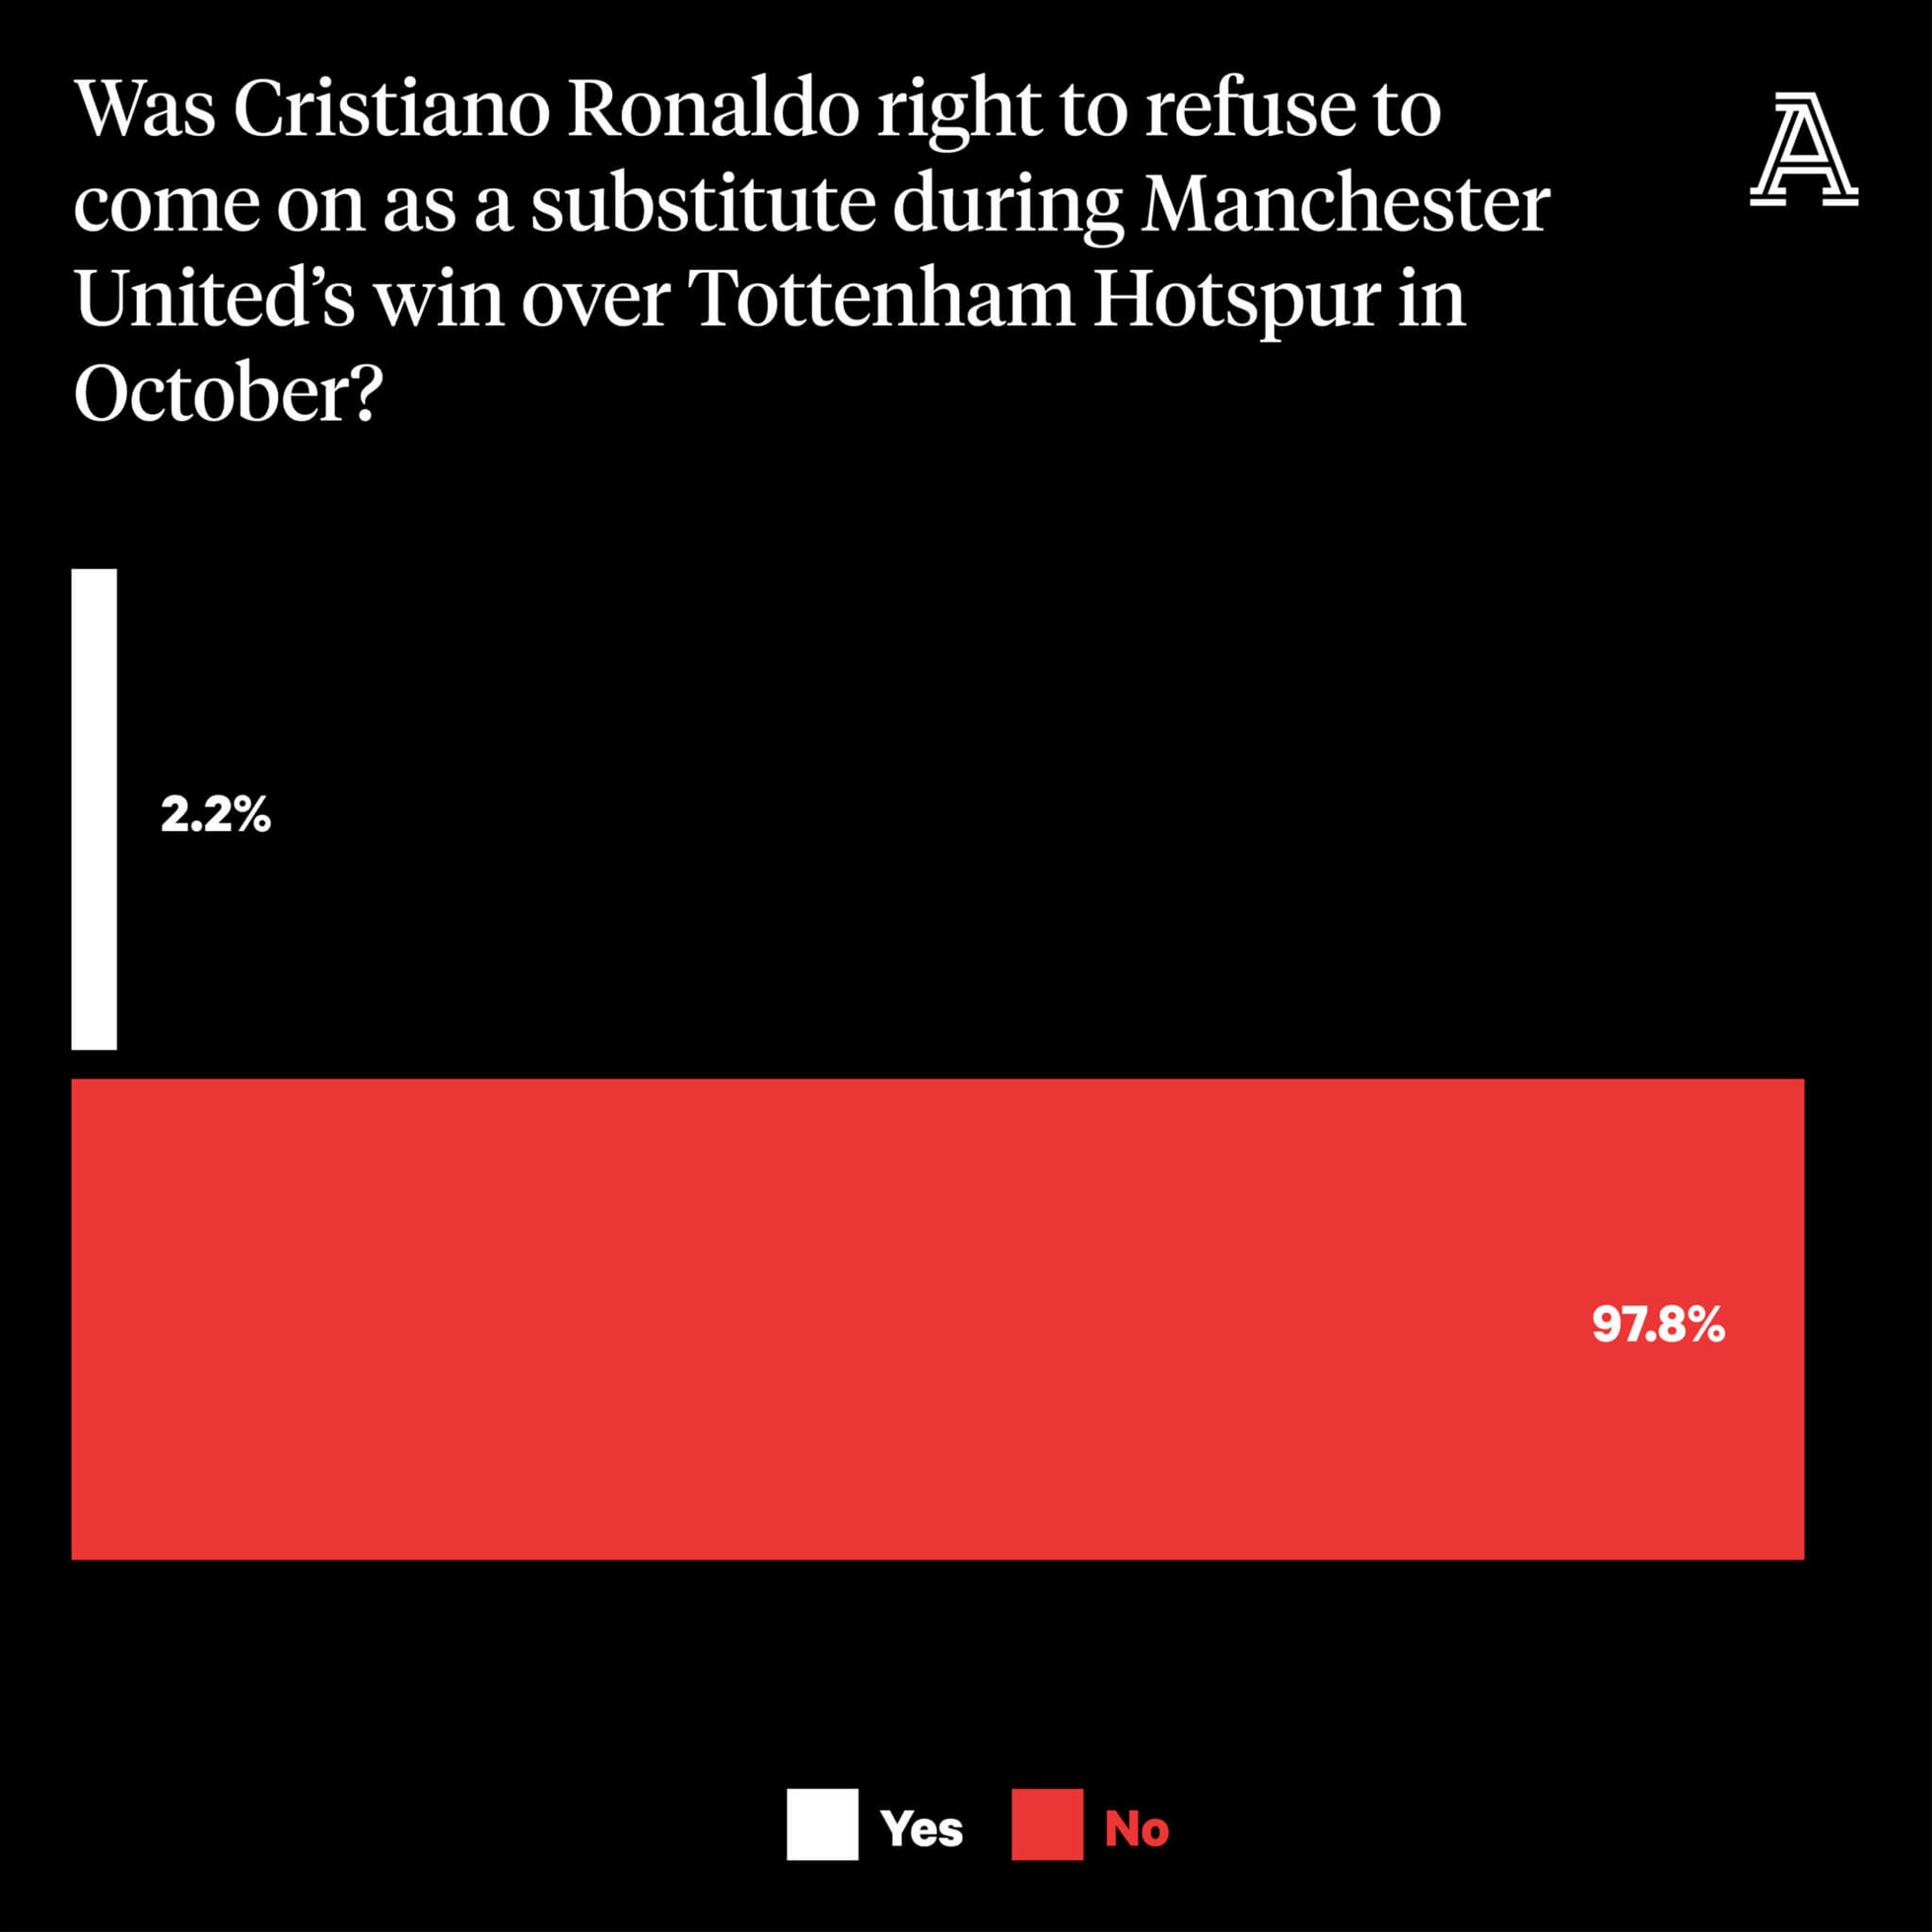 Nguồn cơn mọi thứ đến từ lần bỏ vào đường hầm khi trận đấu với Tottenham chưa kết thúc. 98% người hâm mộ M.U cho rằng, đó là hành động không thể nào chấp nhận được của CR7